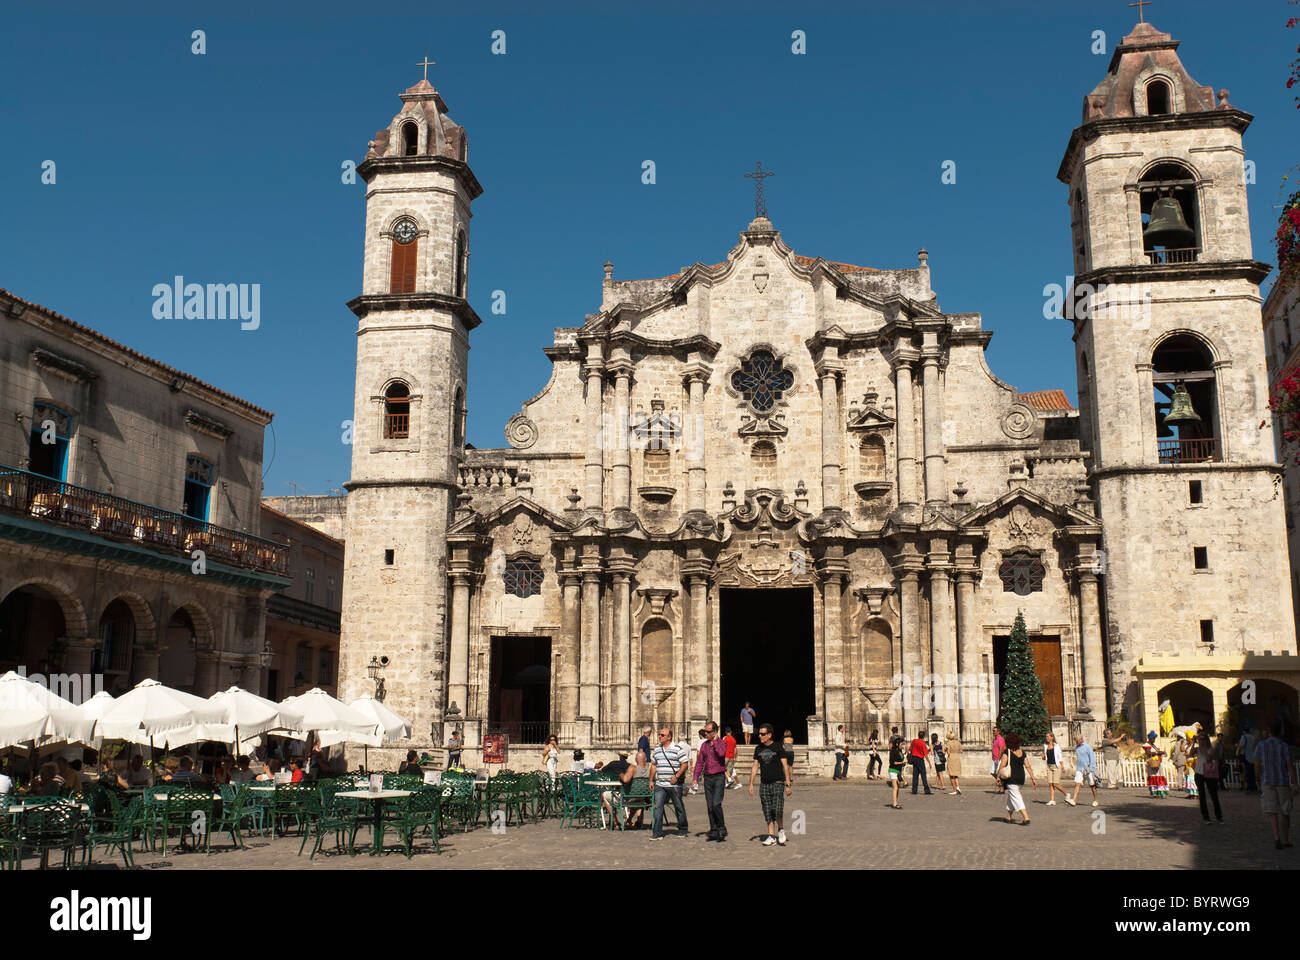 La Habana Cathedral, La Habana Vieja, Cuba Stock Photo